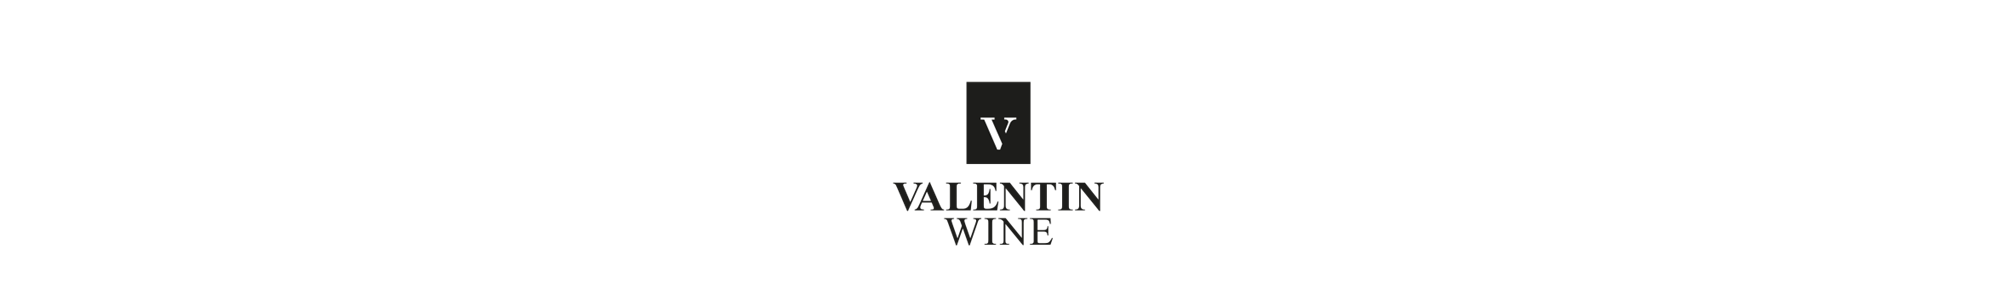 Logo Wine Kl